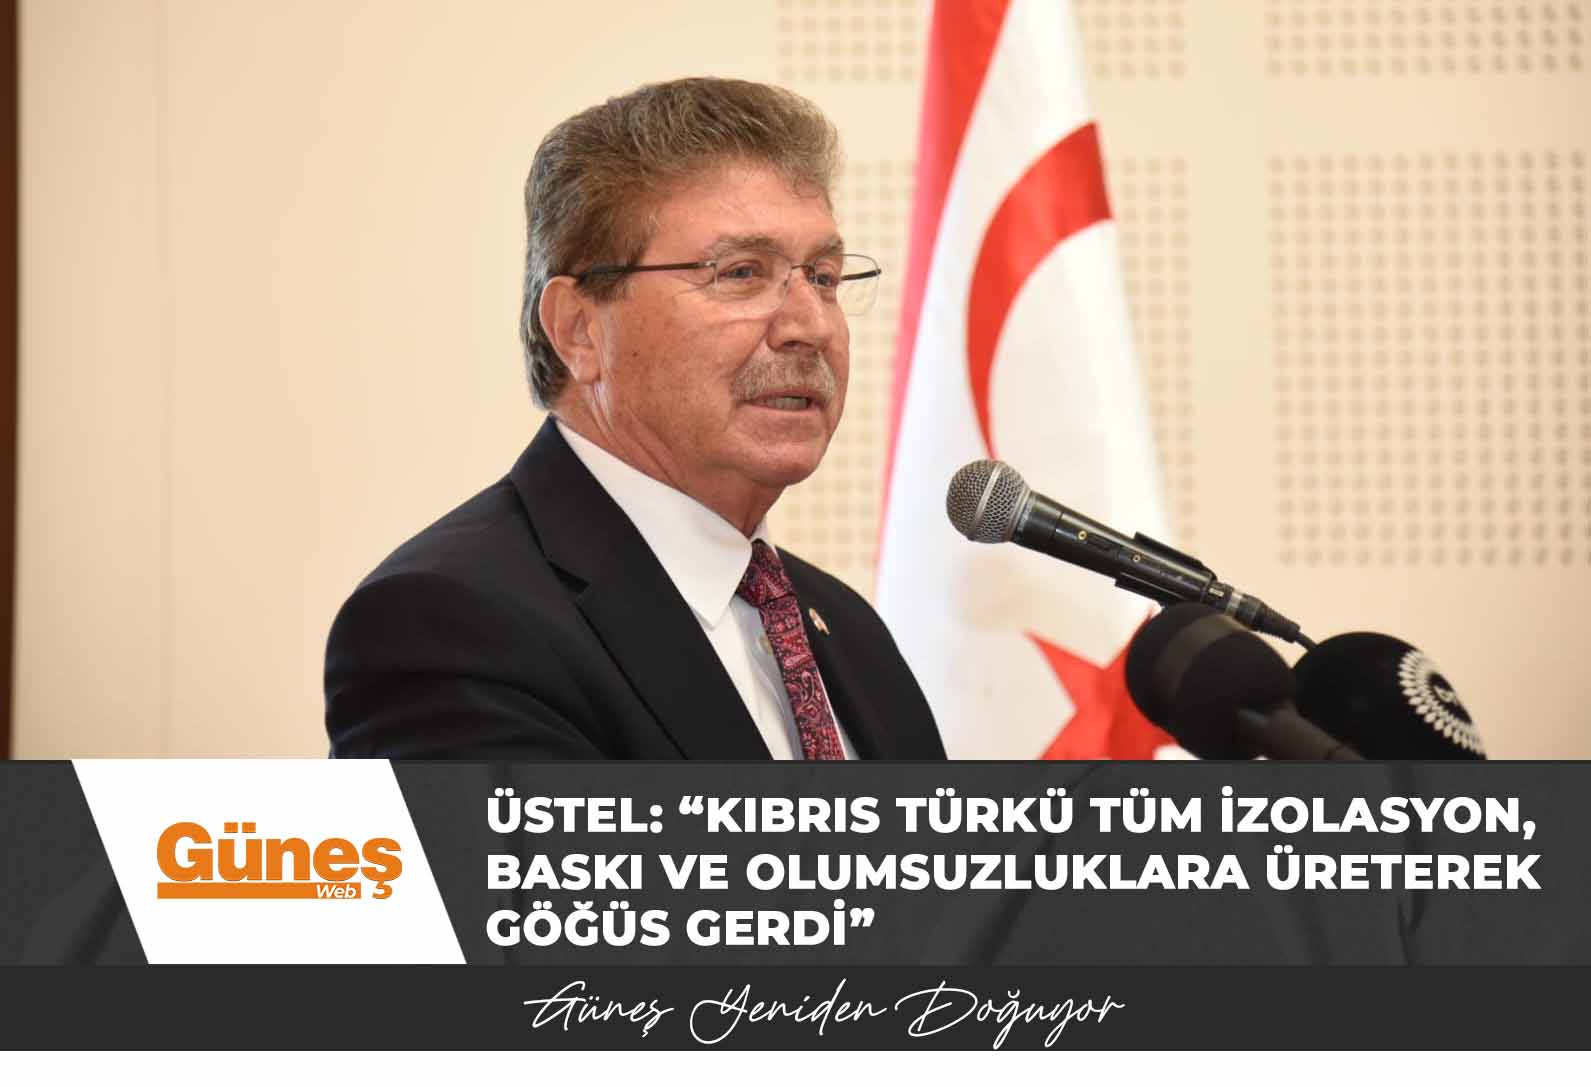 Üstel: “Kıbrıs Türkü tüm izolasyon, baskı ve olumsuzluklara üreterek göğüs gerdi”